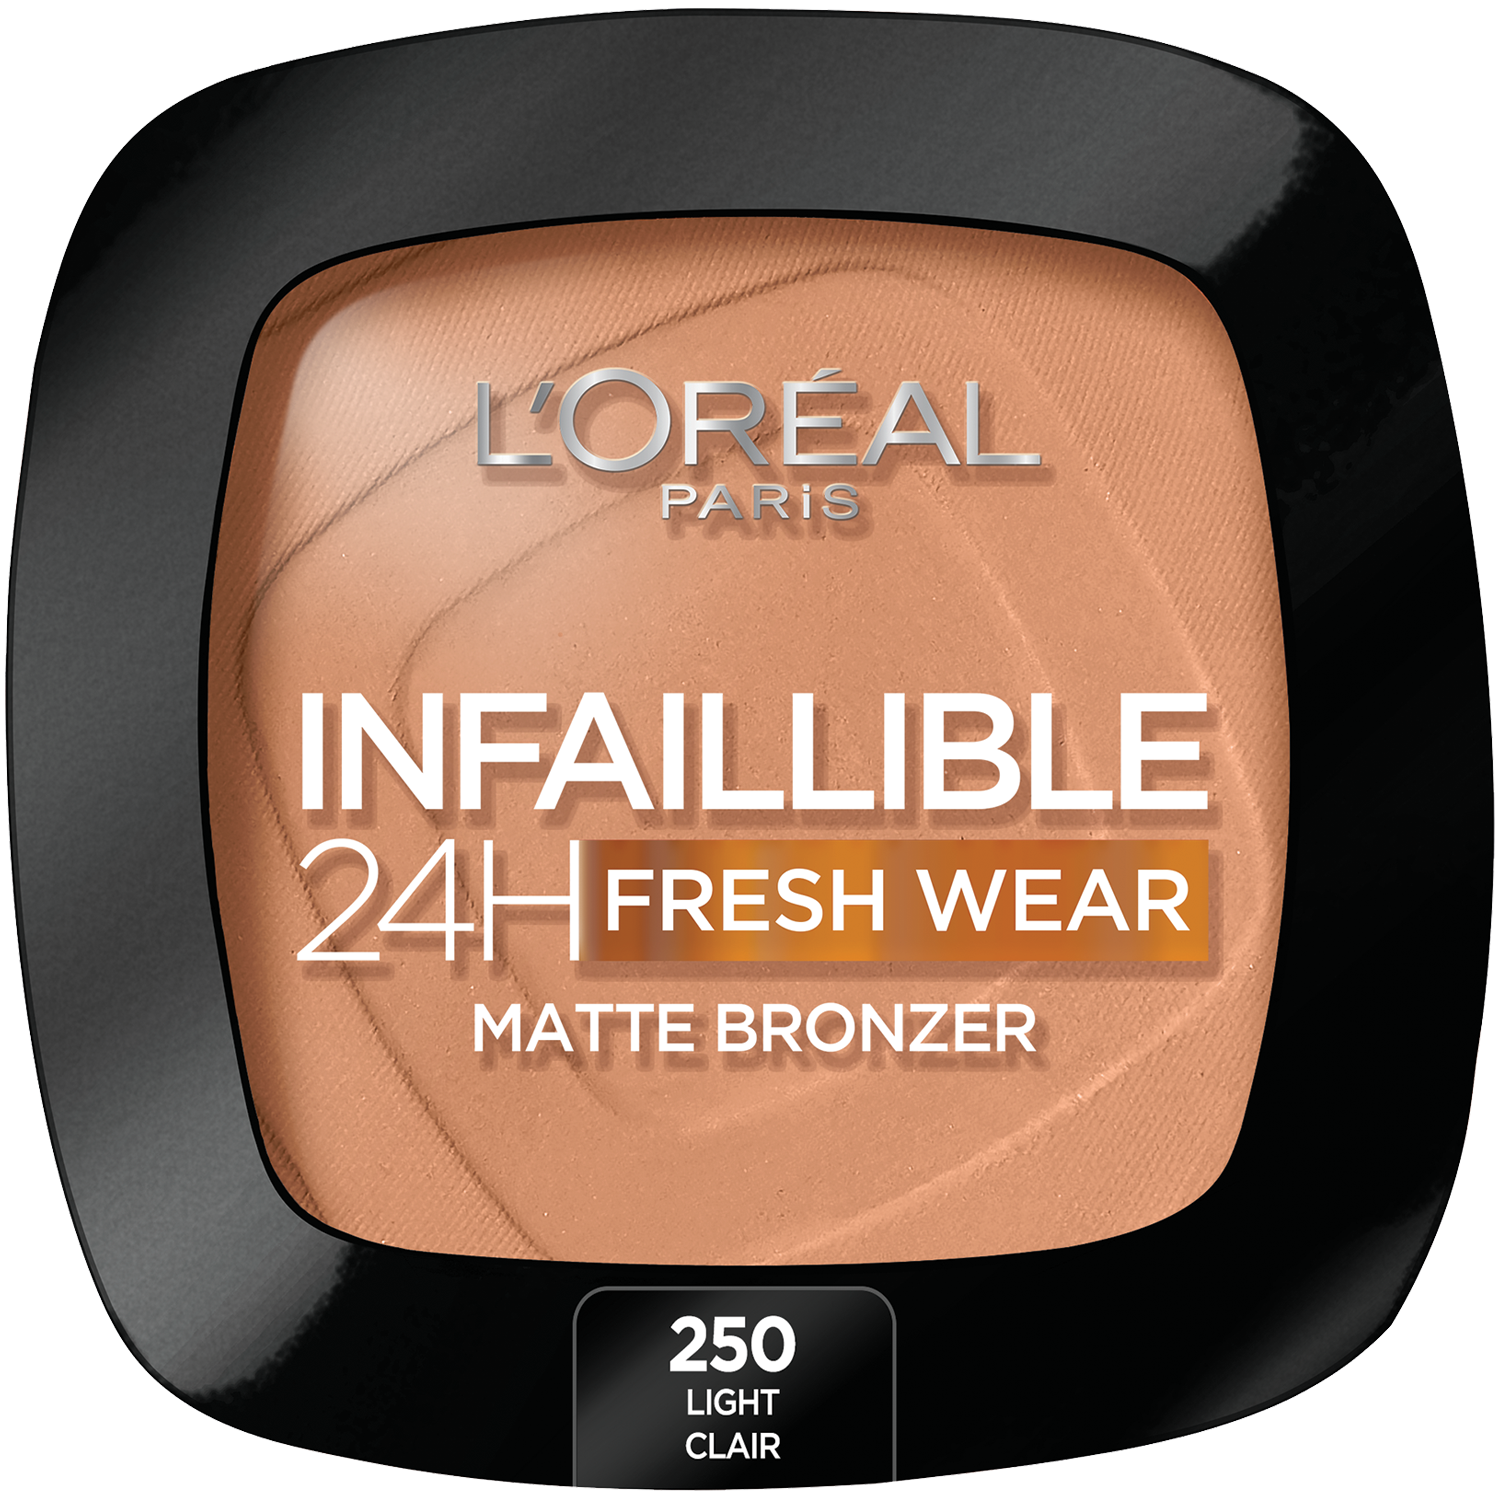 Бронзатор для лица 250 светлый L'Oréal Paris Infailible 24H, 9 гр бронзатор maxminerals бронзер для лица матовый минеральный